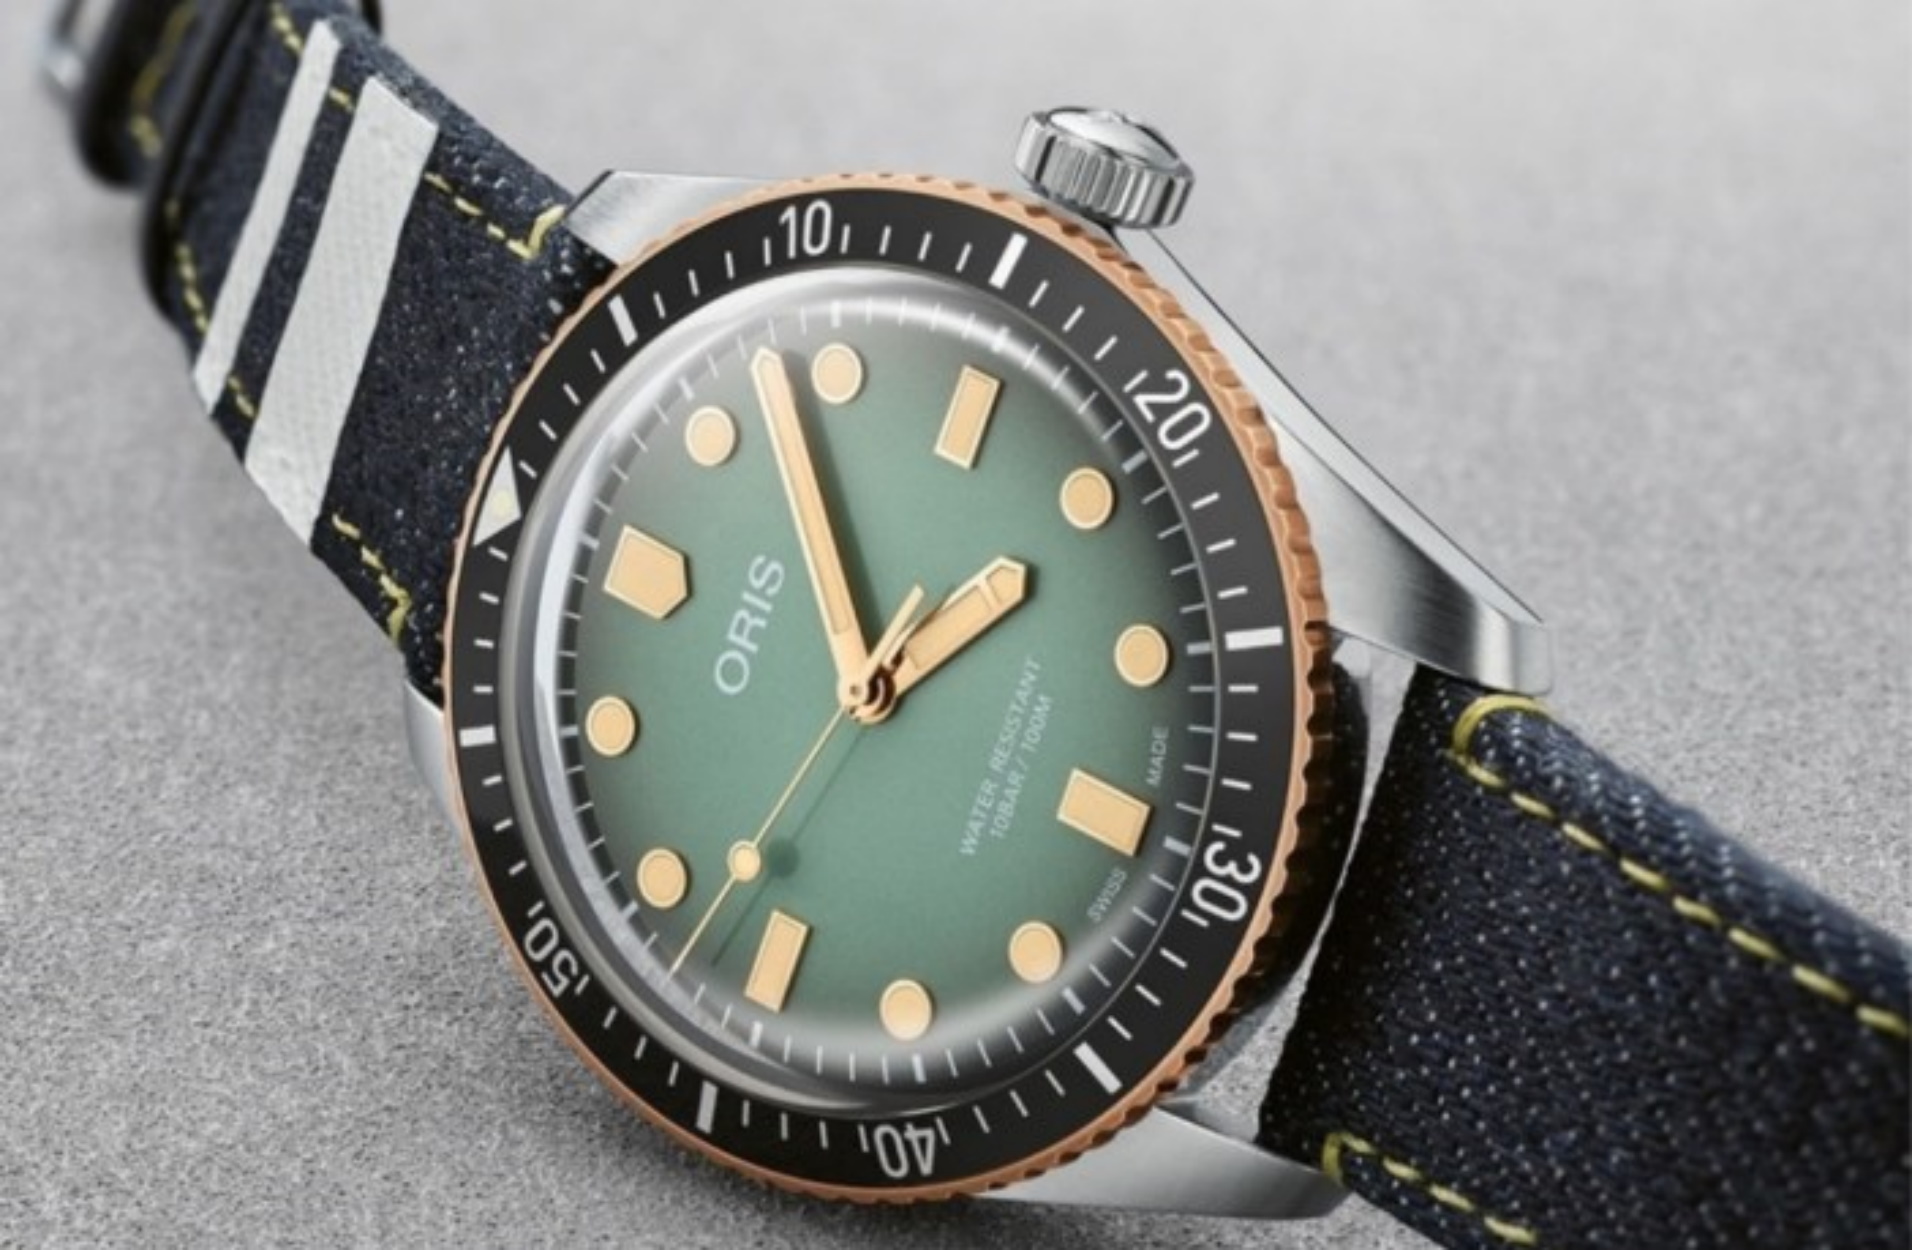 Το νέο Divers Sixty-Five της Oris είναι ένα από τα πιο ιδιαίτερα καταδυτικά ρολόγια που έχουμε δει!